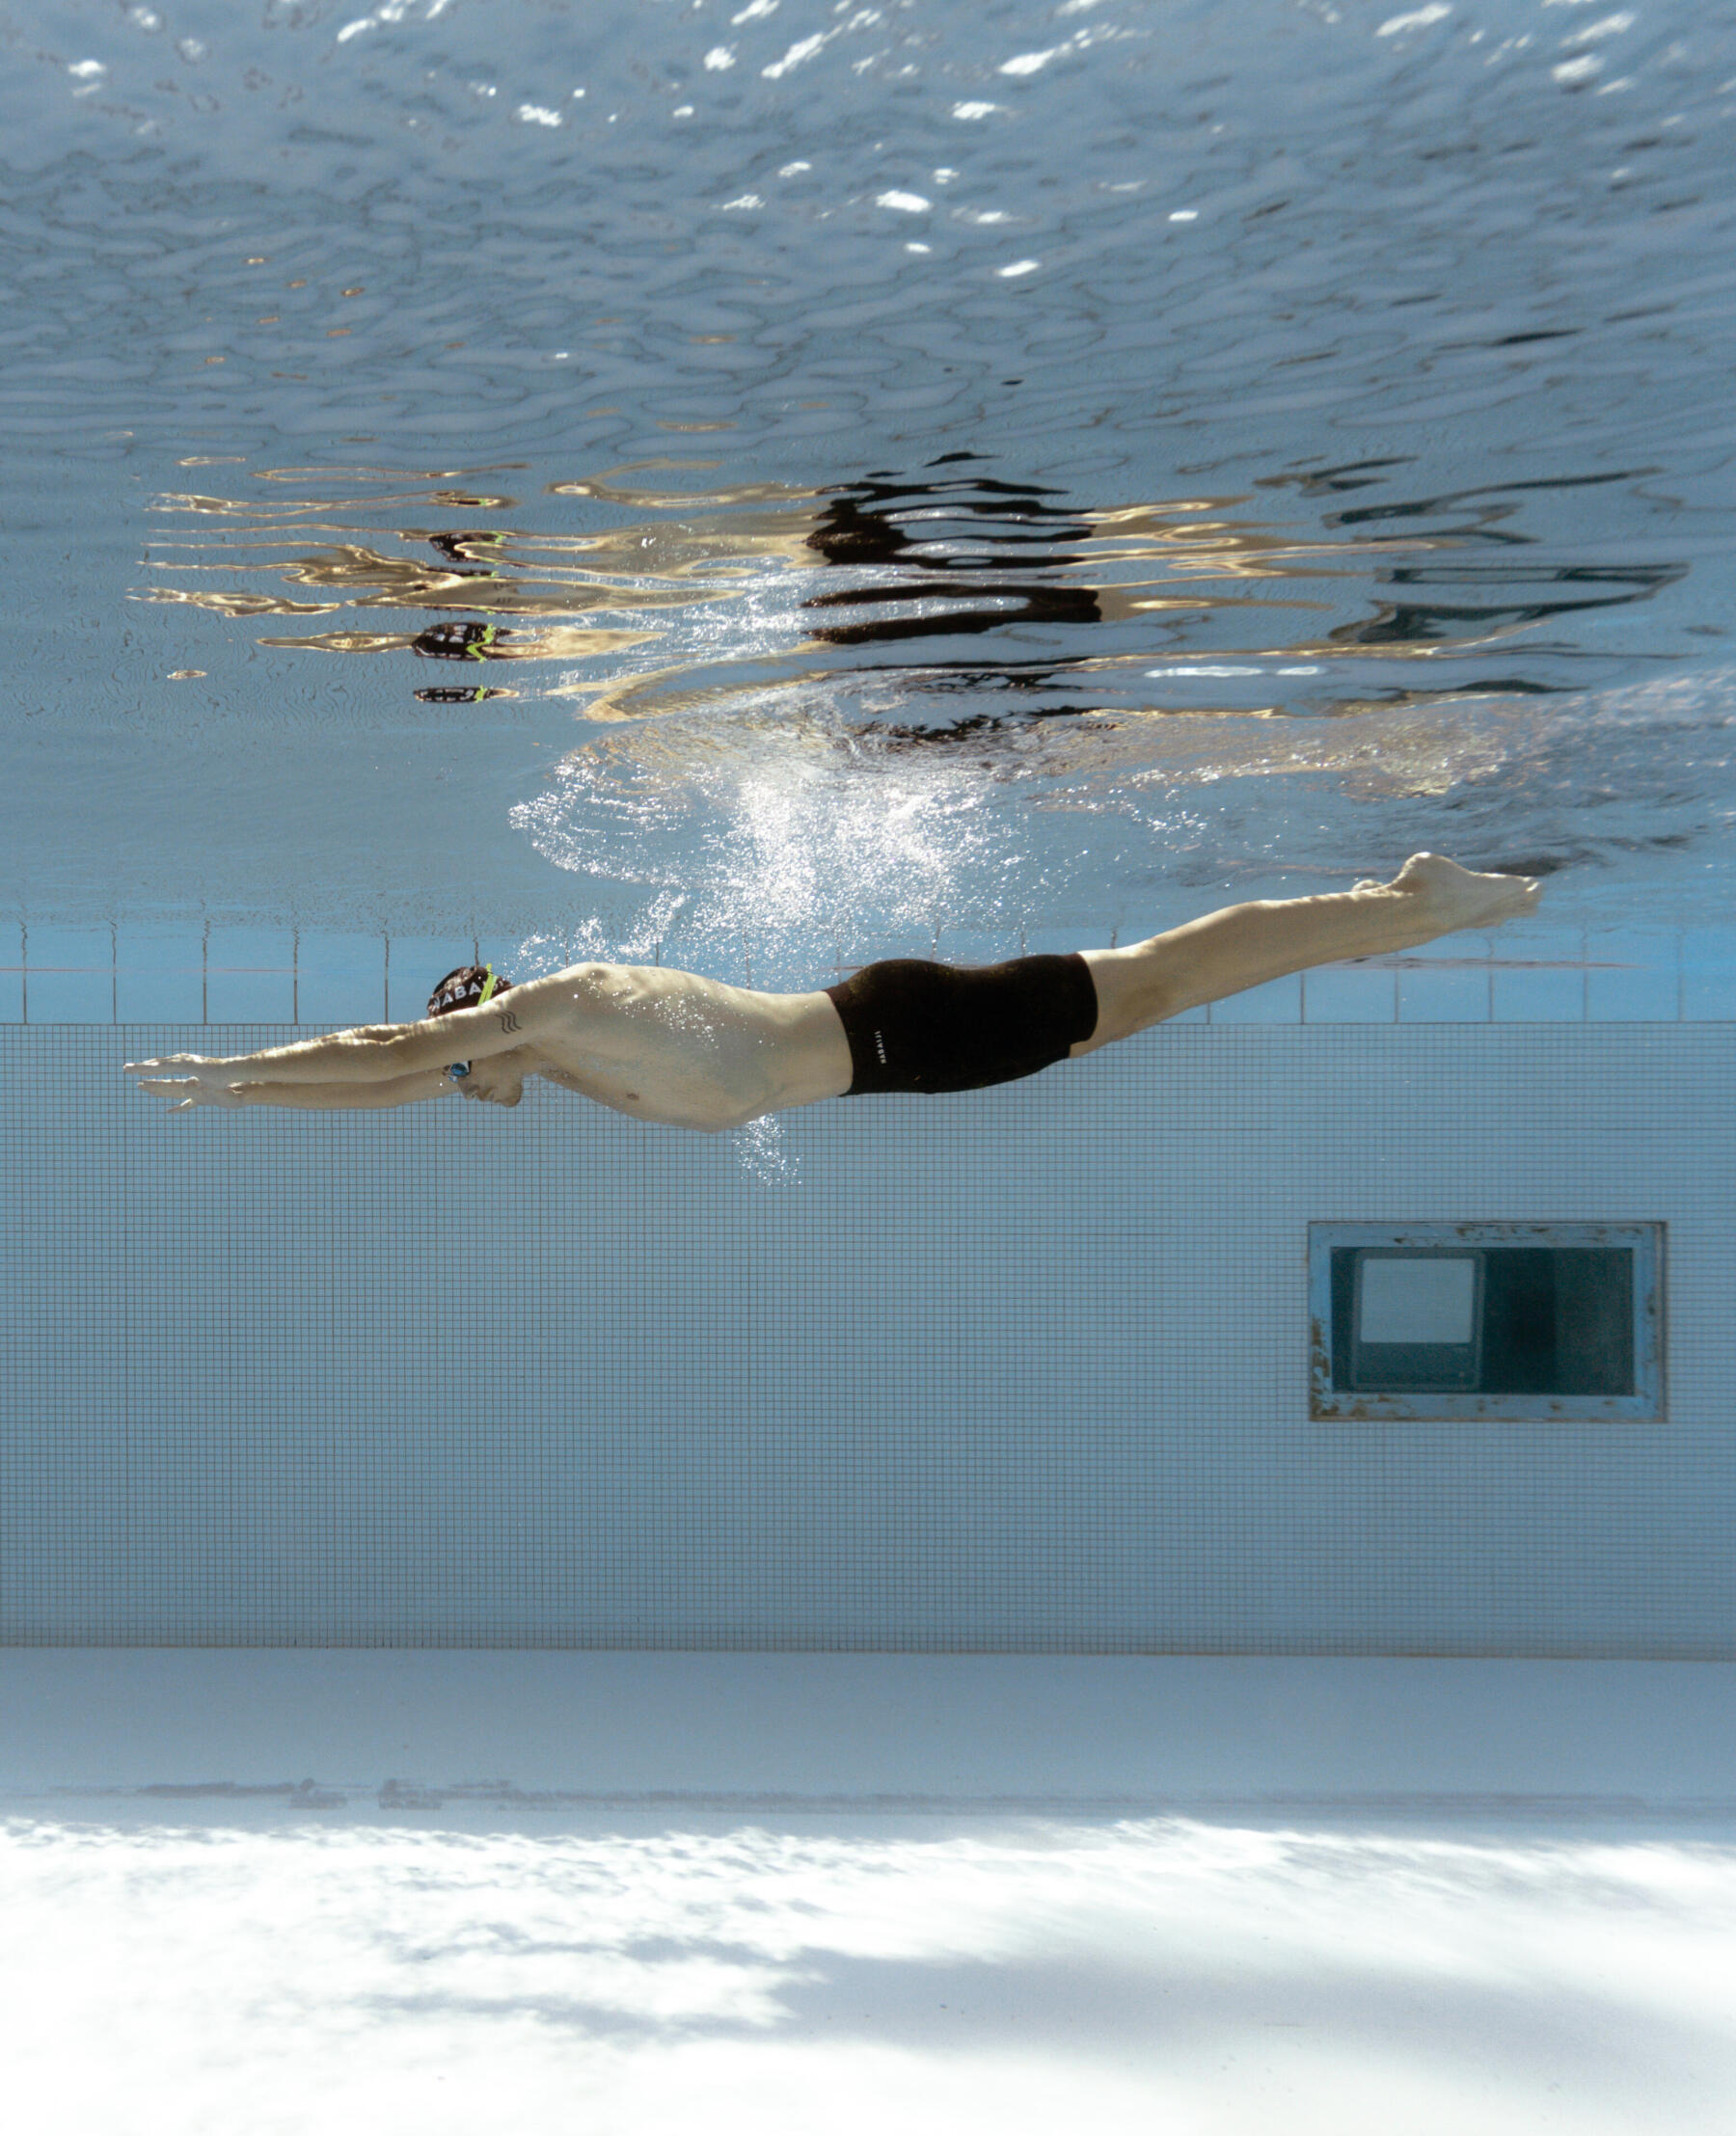 Cum să îți îmbunătățești sistemul cardio-vascular prin înot?